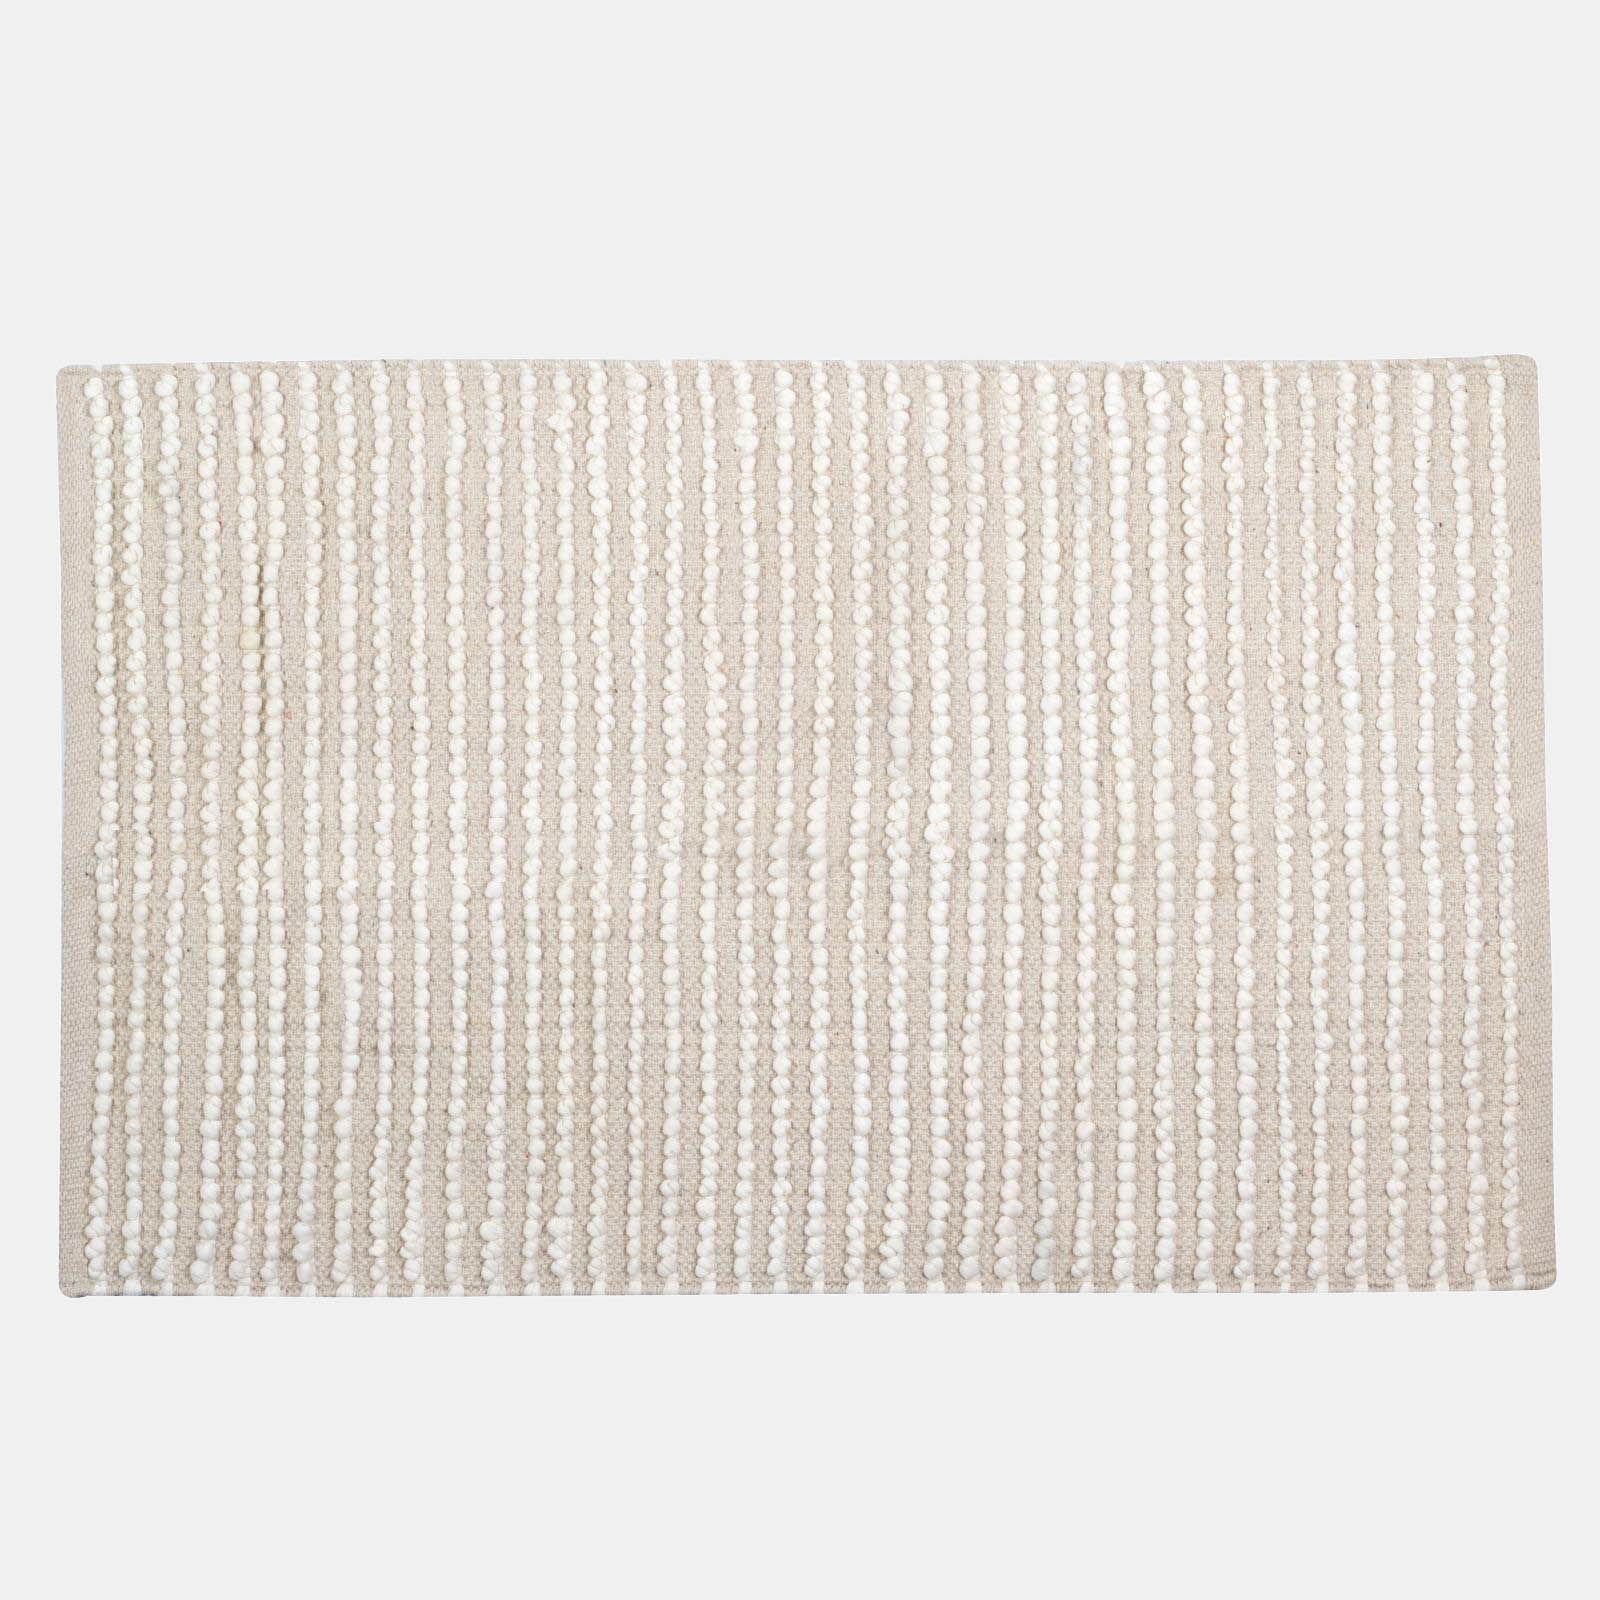 Tappeto da interni in cotone intrecciato ricamo tufting 60x90 cm beige